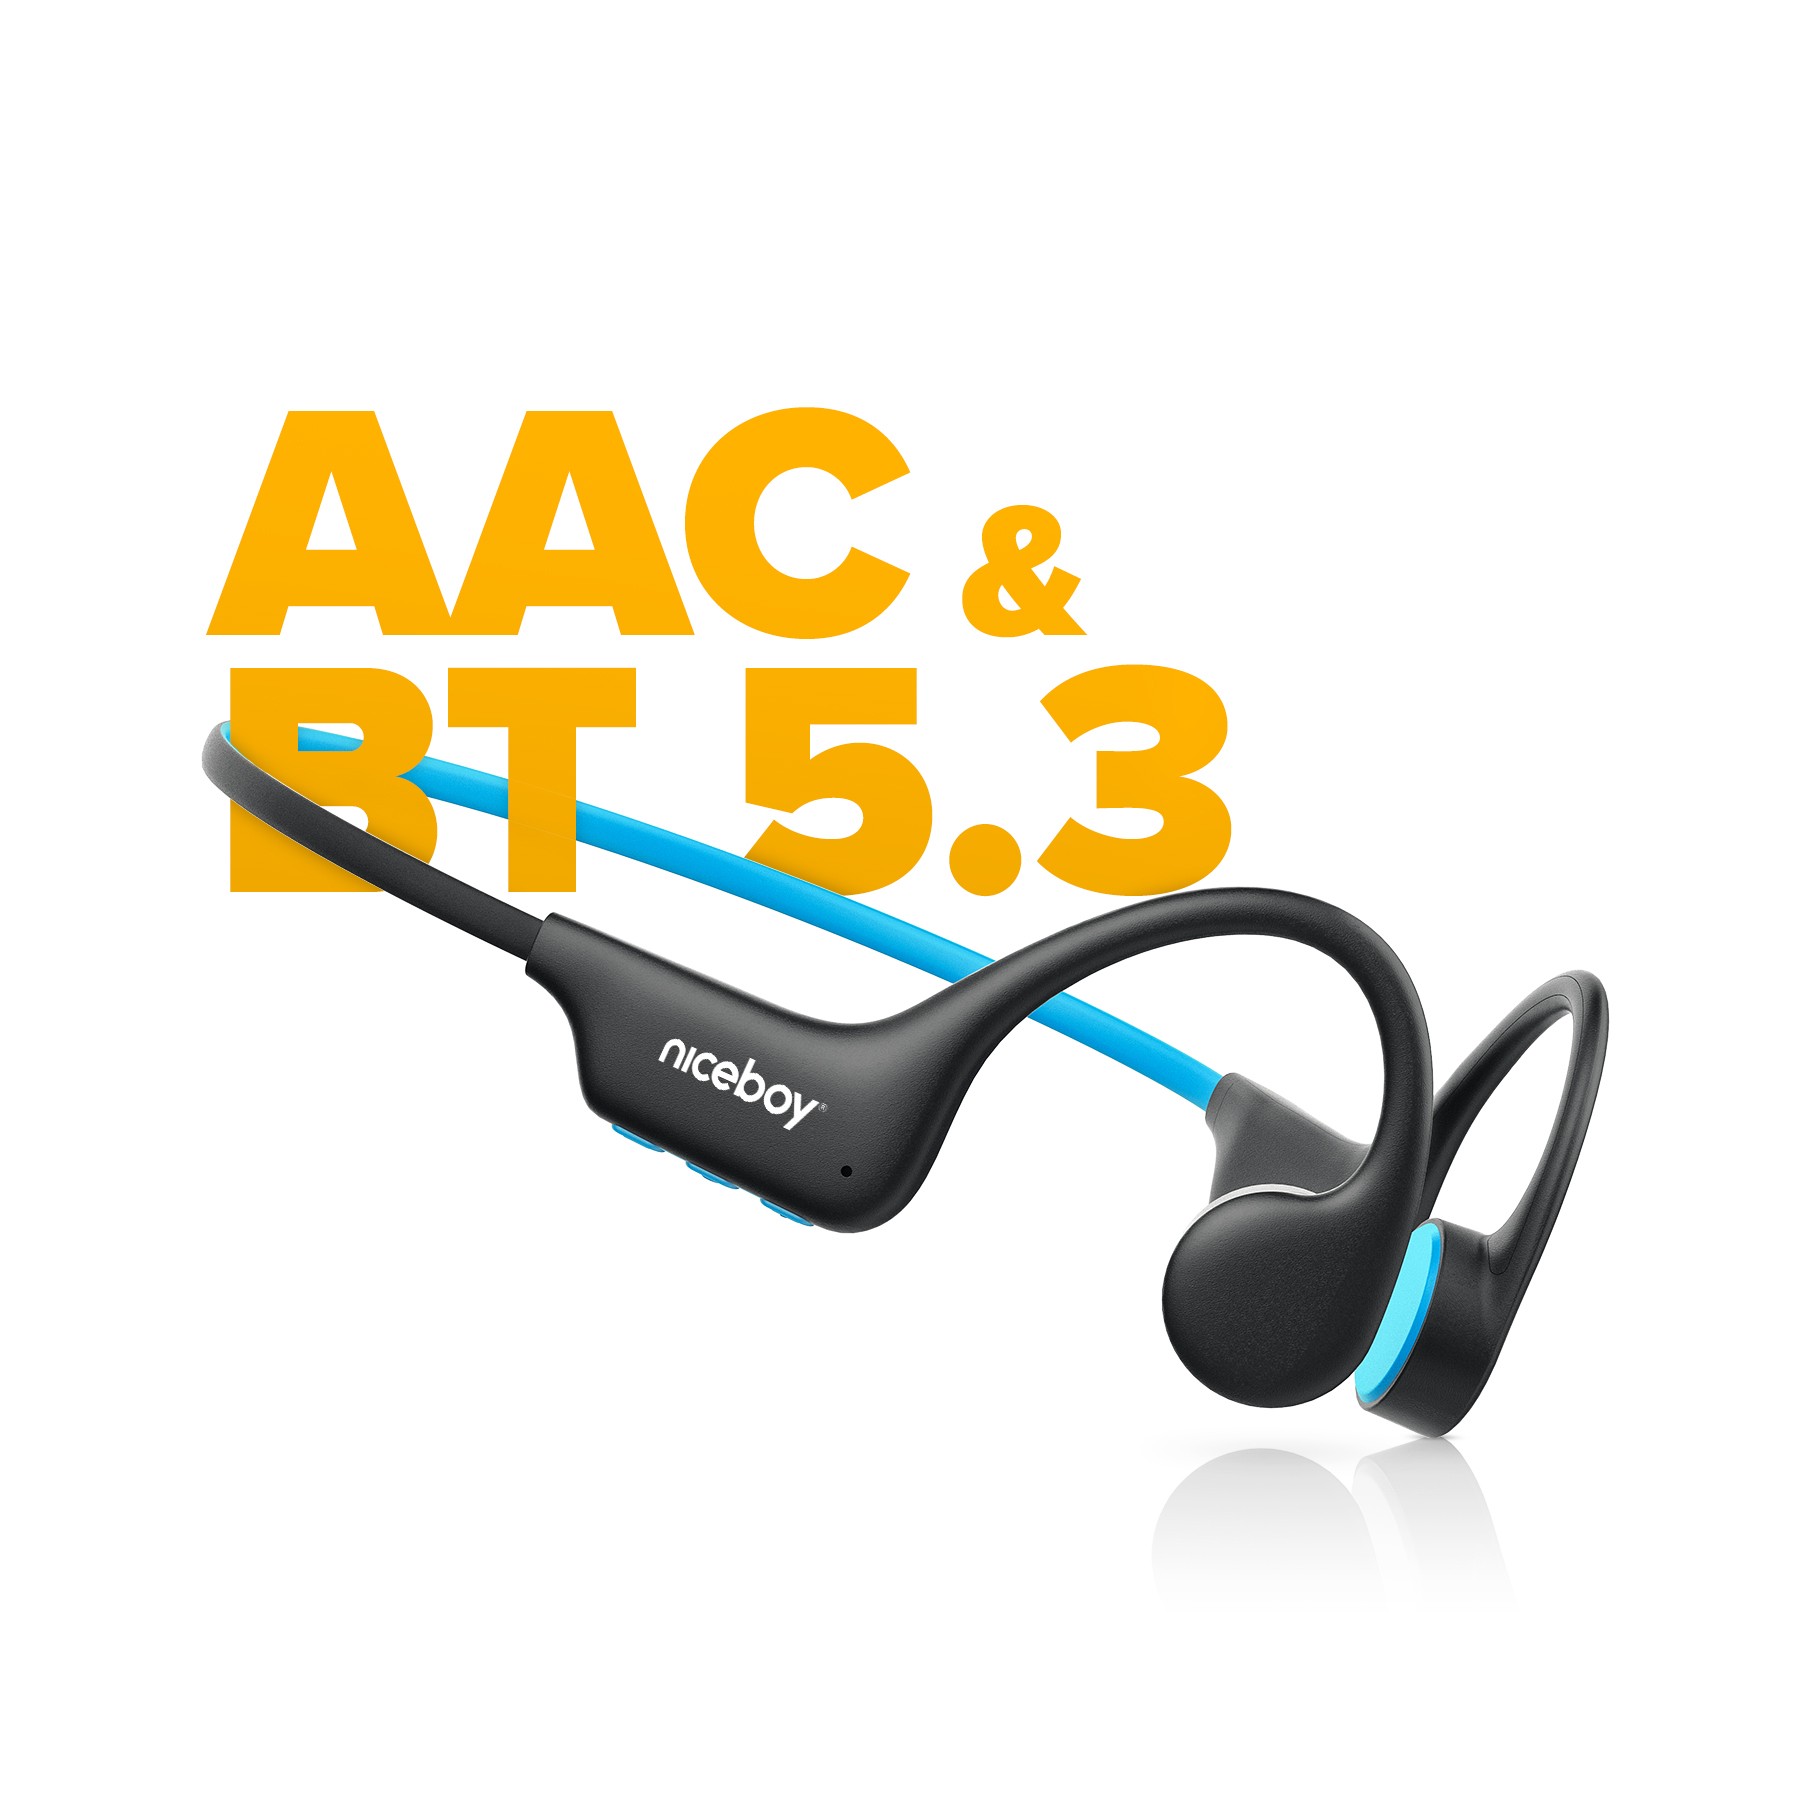 Sluchátka Niceboy Hive Bones 3 podporují Bluetooth 5.3 a kodek AAC, díky čemuž přenáší zvuk bez jakýchkoliv výpadků a ve vyšší kvalitě..